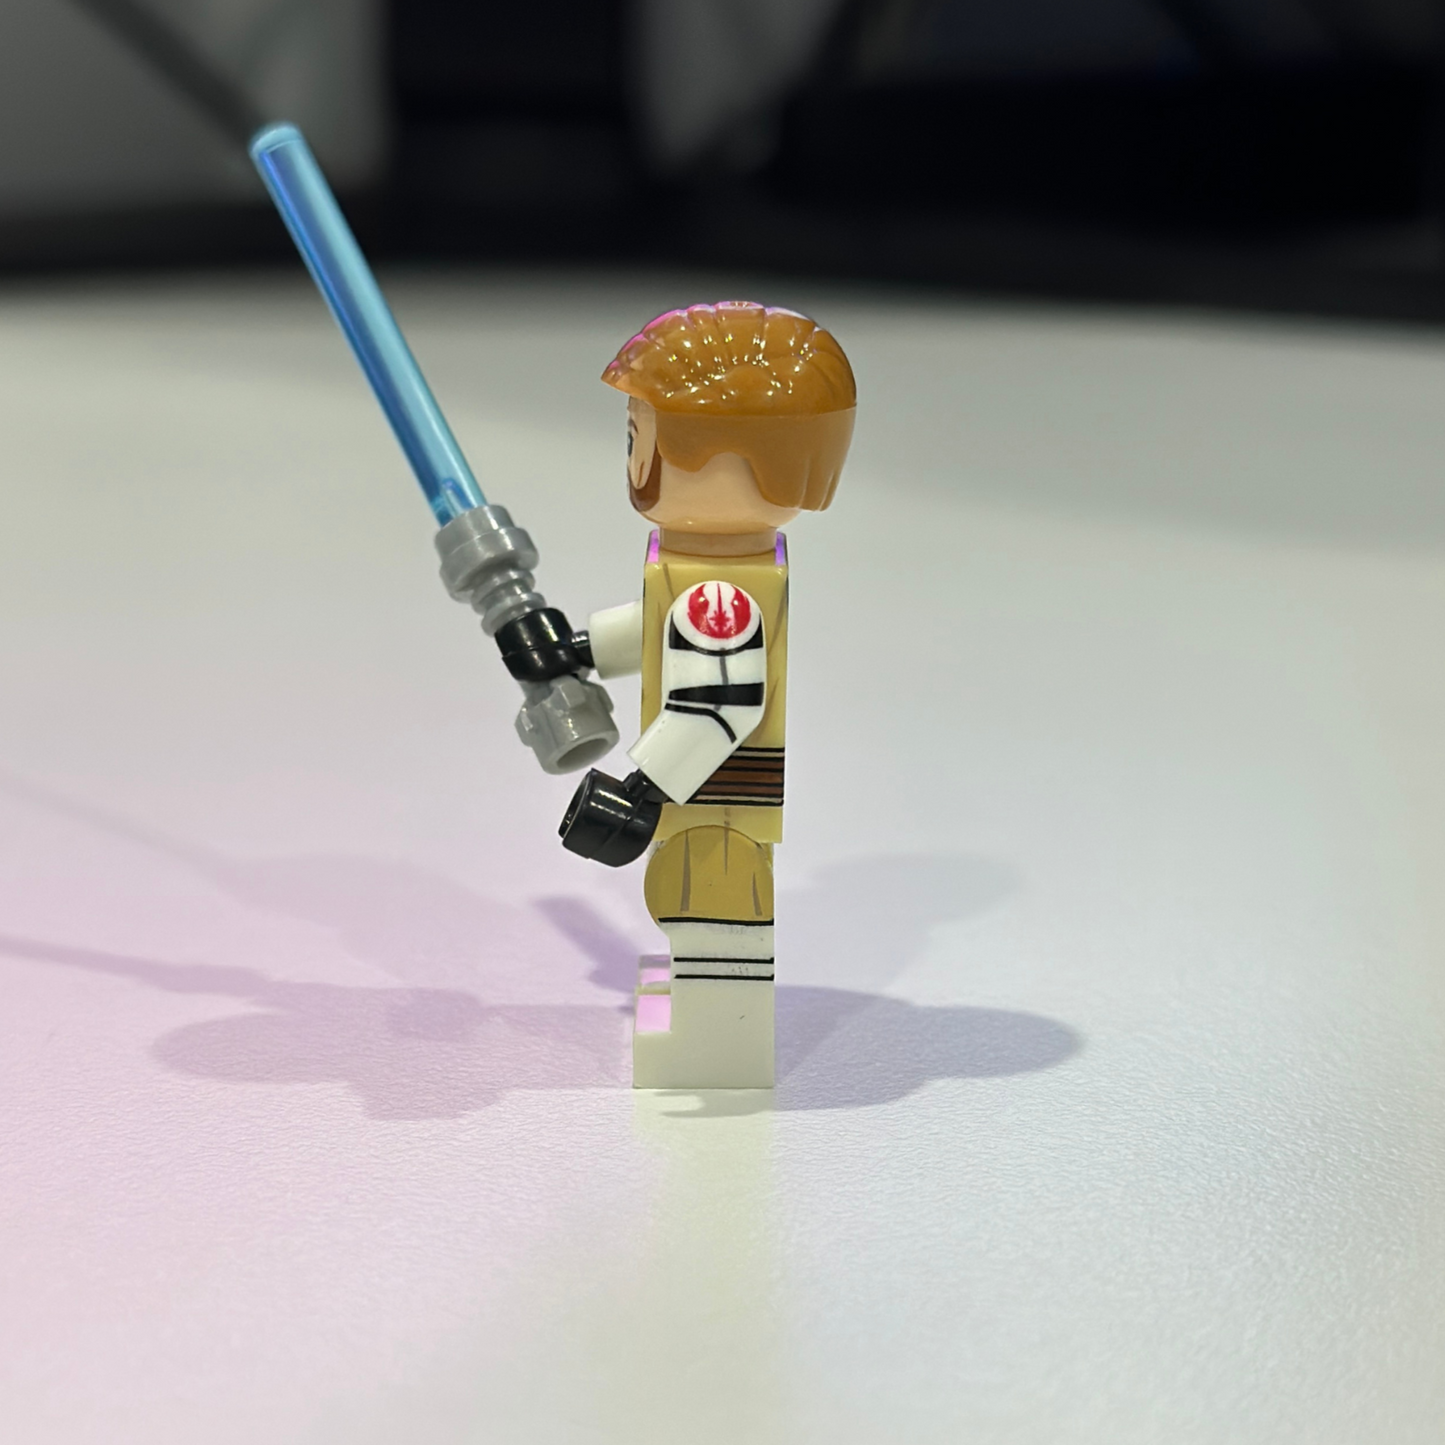 Star Wars Obi-Wan Kenobi Jedi Master Minifigure - 212th Battalion Commander